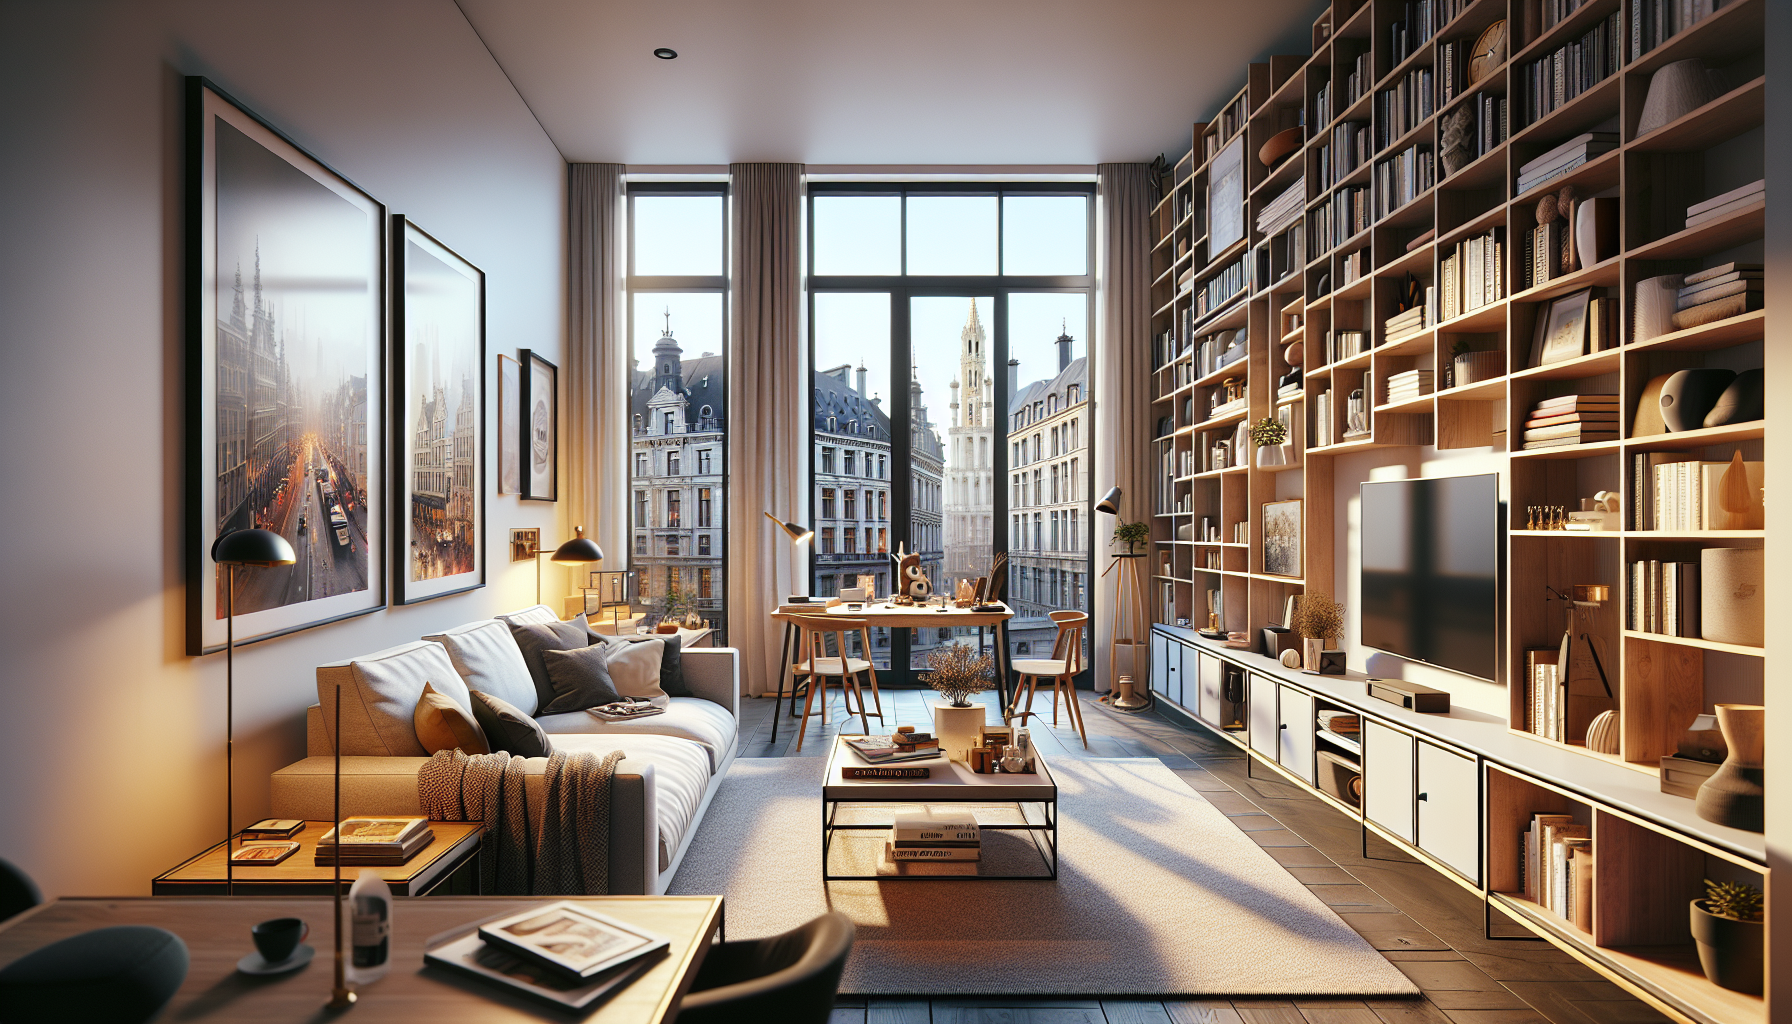 découvrez les avantages de la location meublée à bruxelles et trouvez votre logement idéal dans la capitale européenne.